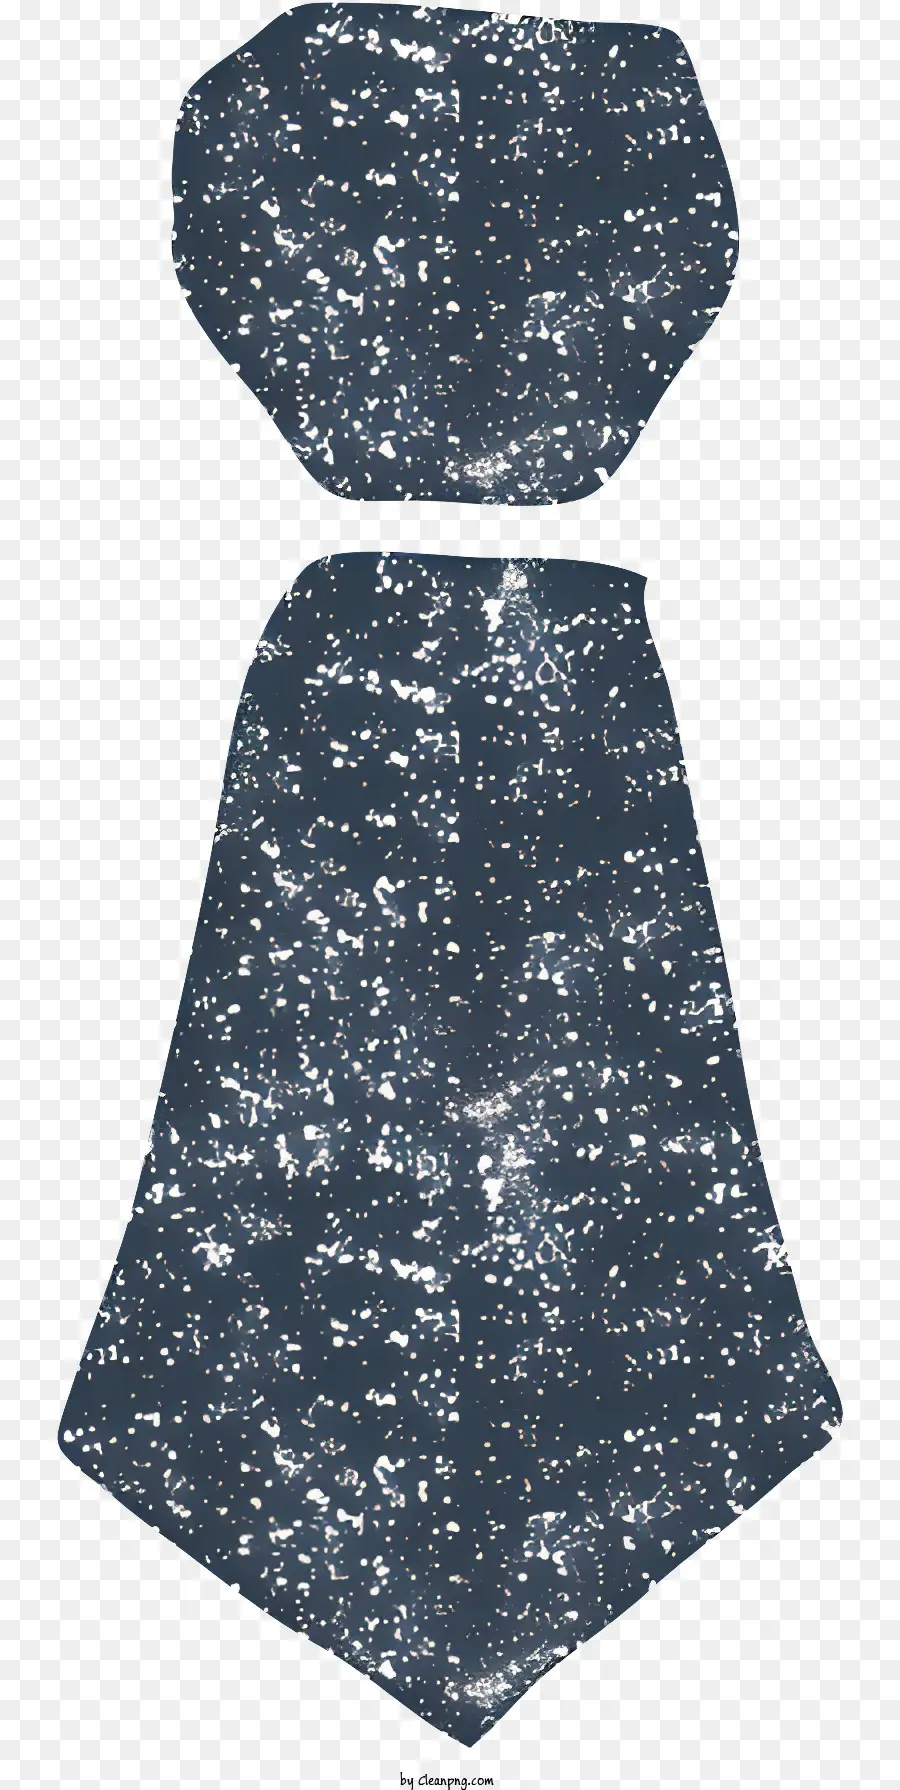 Icona Navy Blue Tovaglia geometrica Modello di dots bianco e nero Design della tovaglia - Tovaglie blu navy con punti bianchi e neri